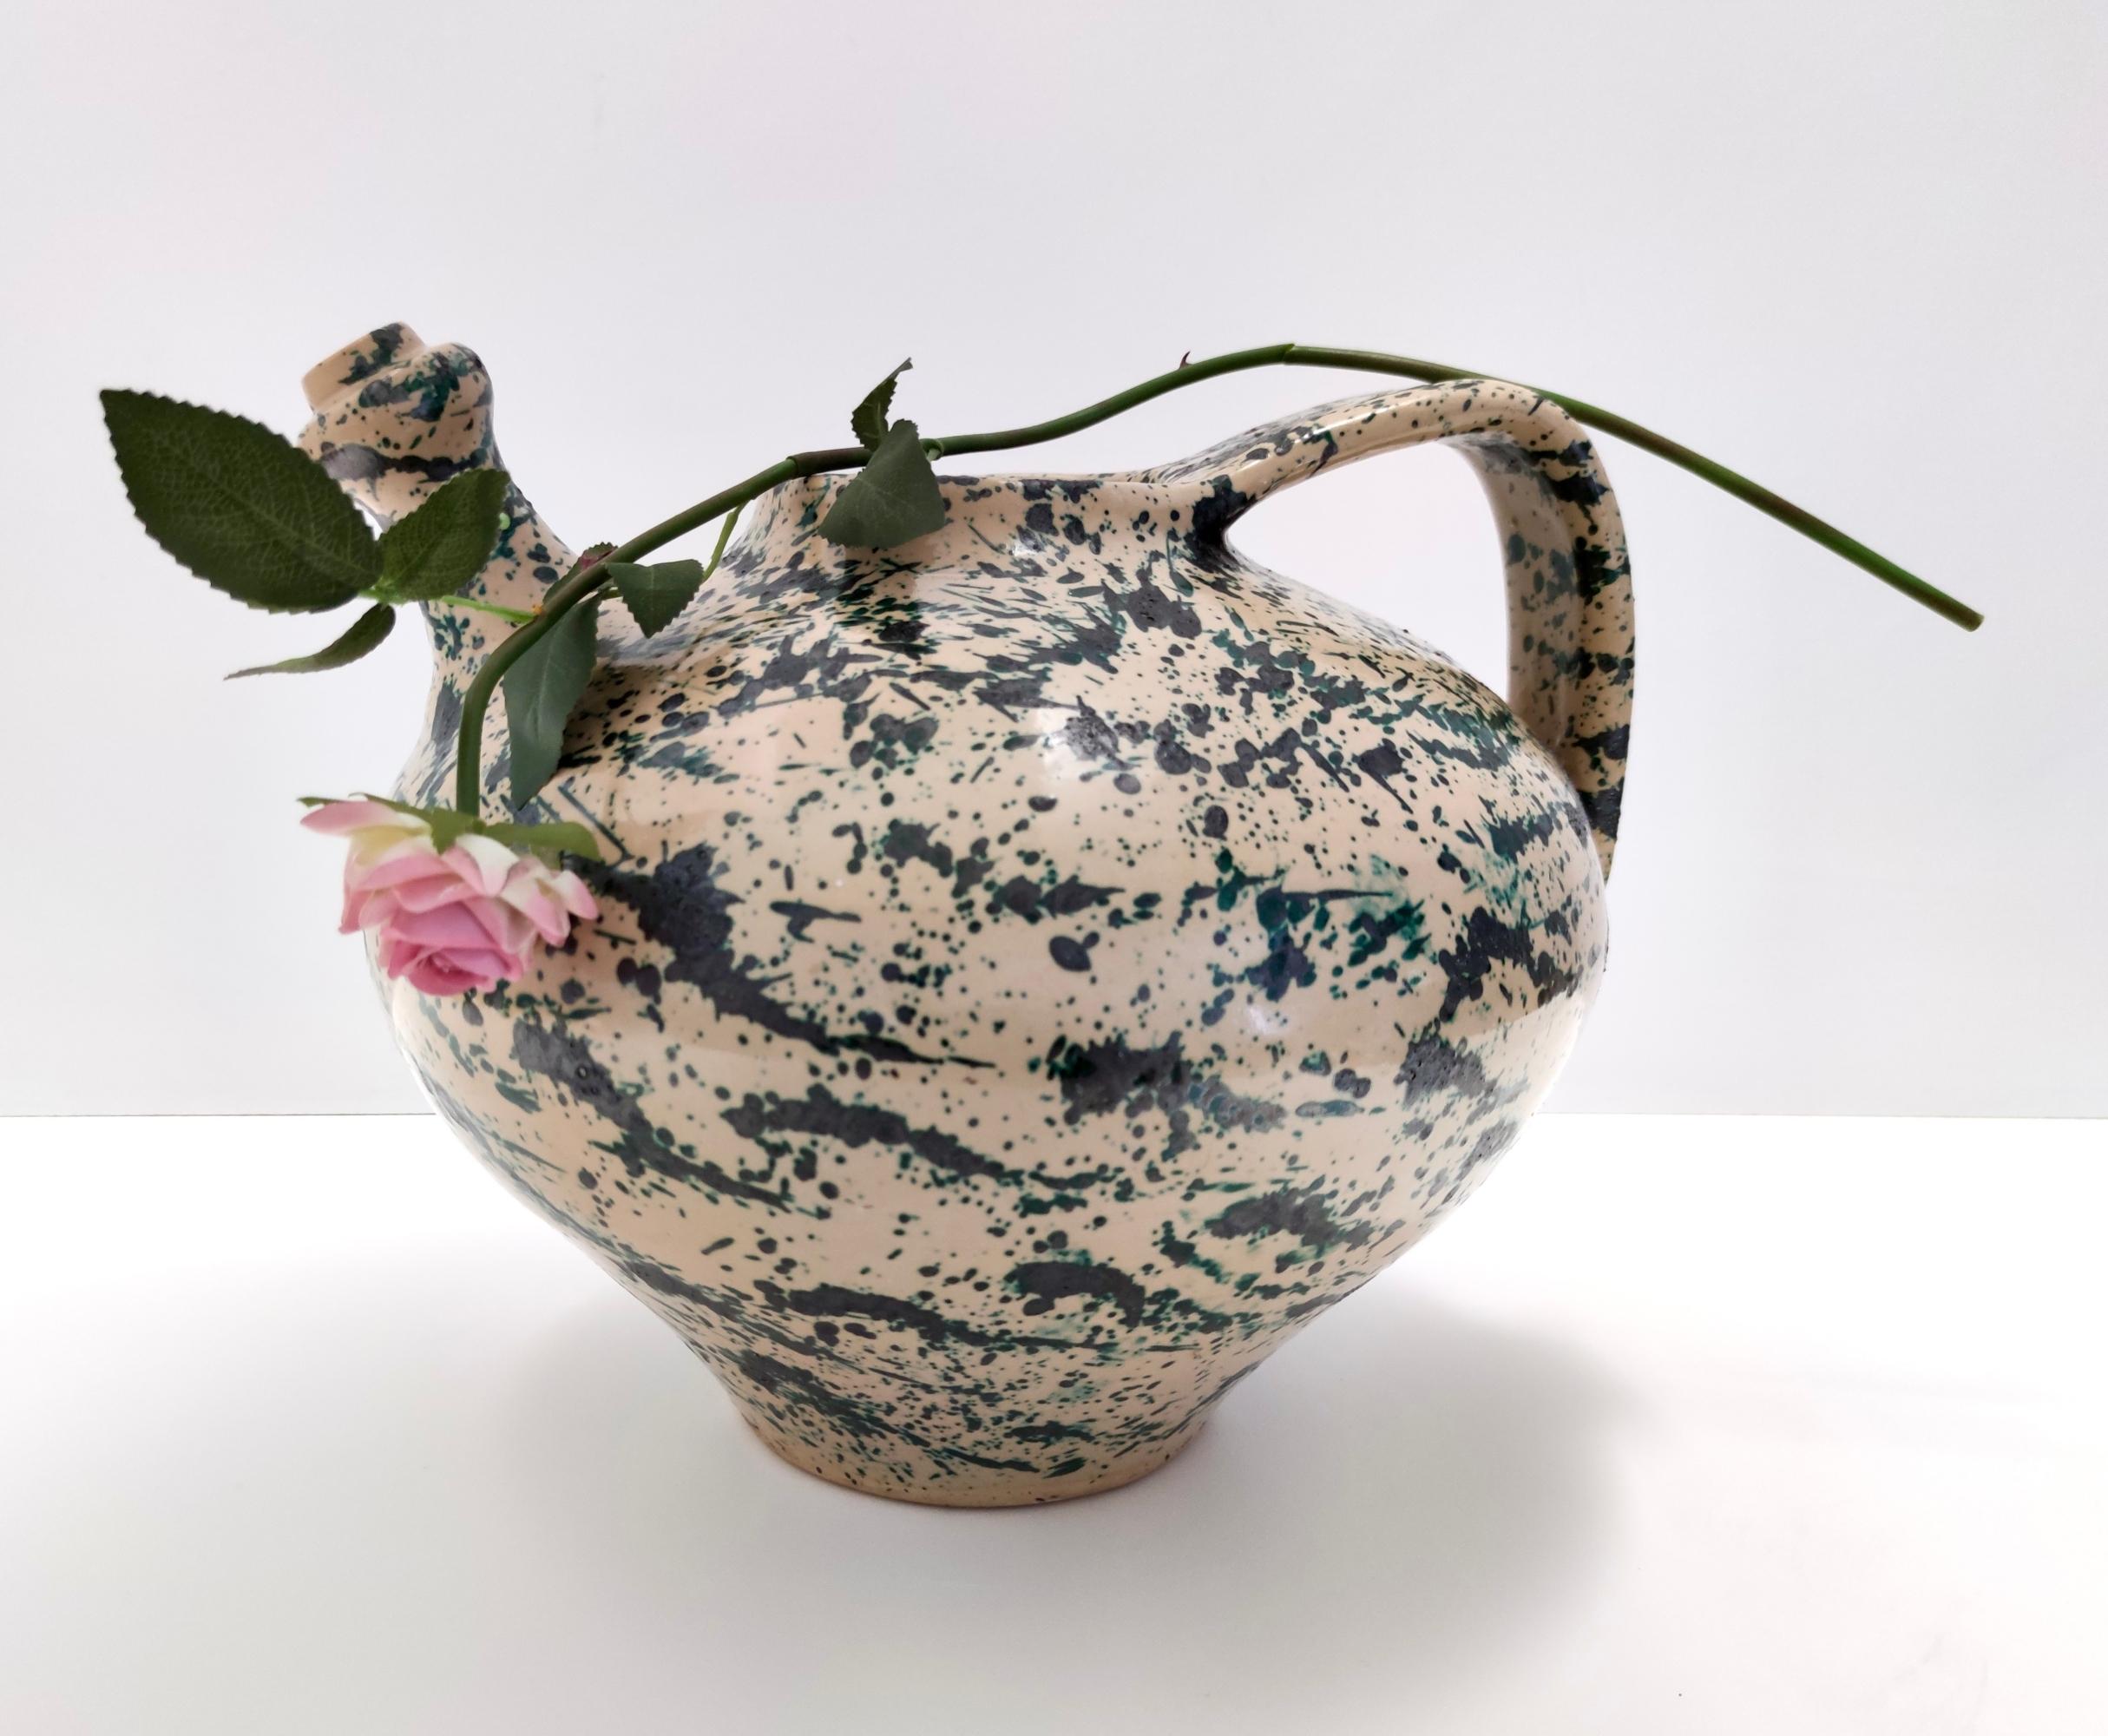 Fabriqué en Italie, années 1950. 
Ce vase est réalisé en terre cuite laquée et peinte à la main avec une décoration similaire à l'action painting et une forme qui rappelle l'outre étrusque en terre cuite, mais qui, pour l'anse et la base plus fine,